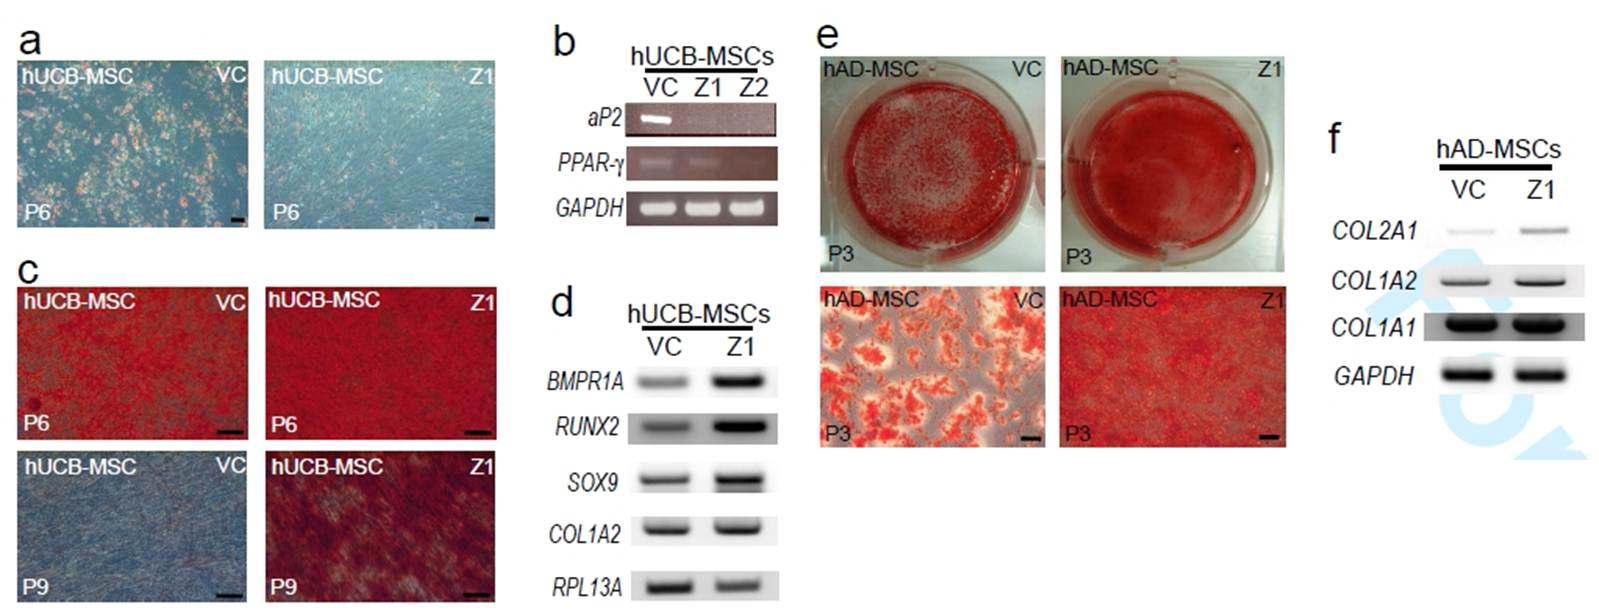 중간엽 줄기세포에서 ZNF281억제에 따른 골과 지방분화능 변화